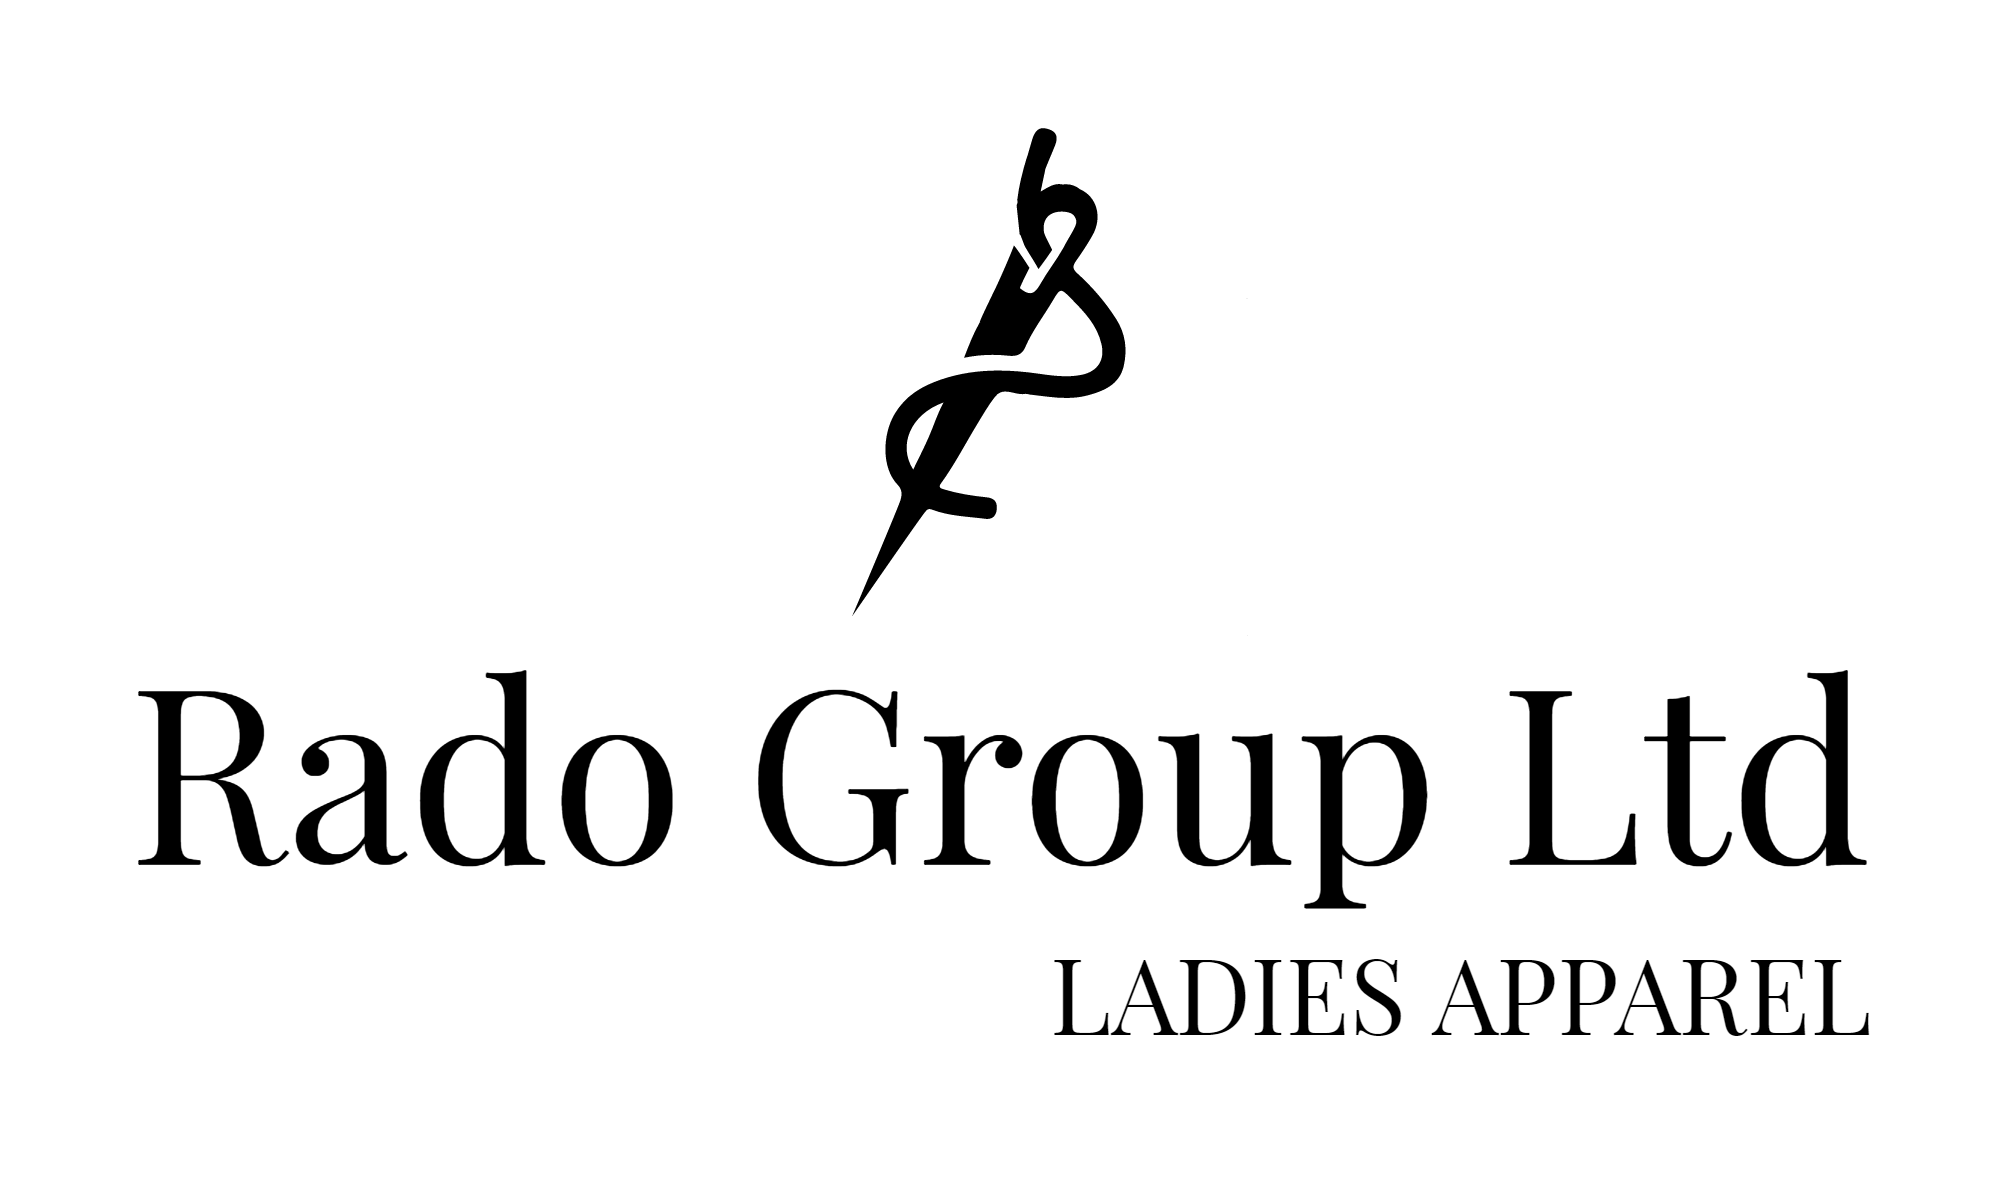 Clothing Manufacturer Logo - Rado Group Ltd. Bulgarian Clothing Manufacturer